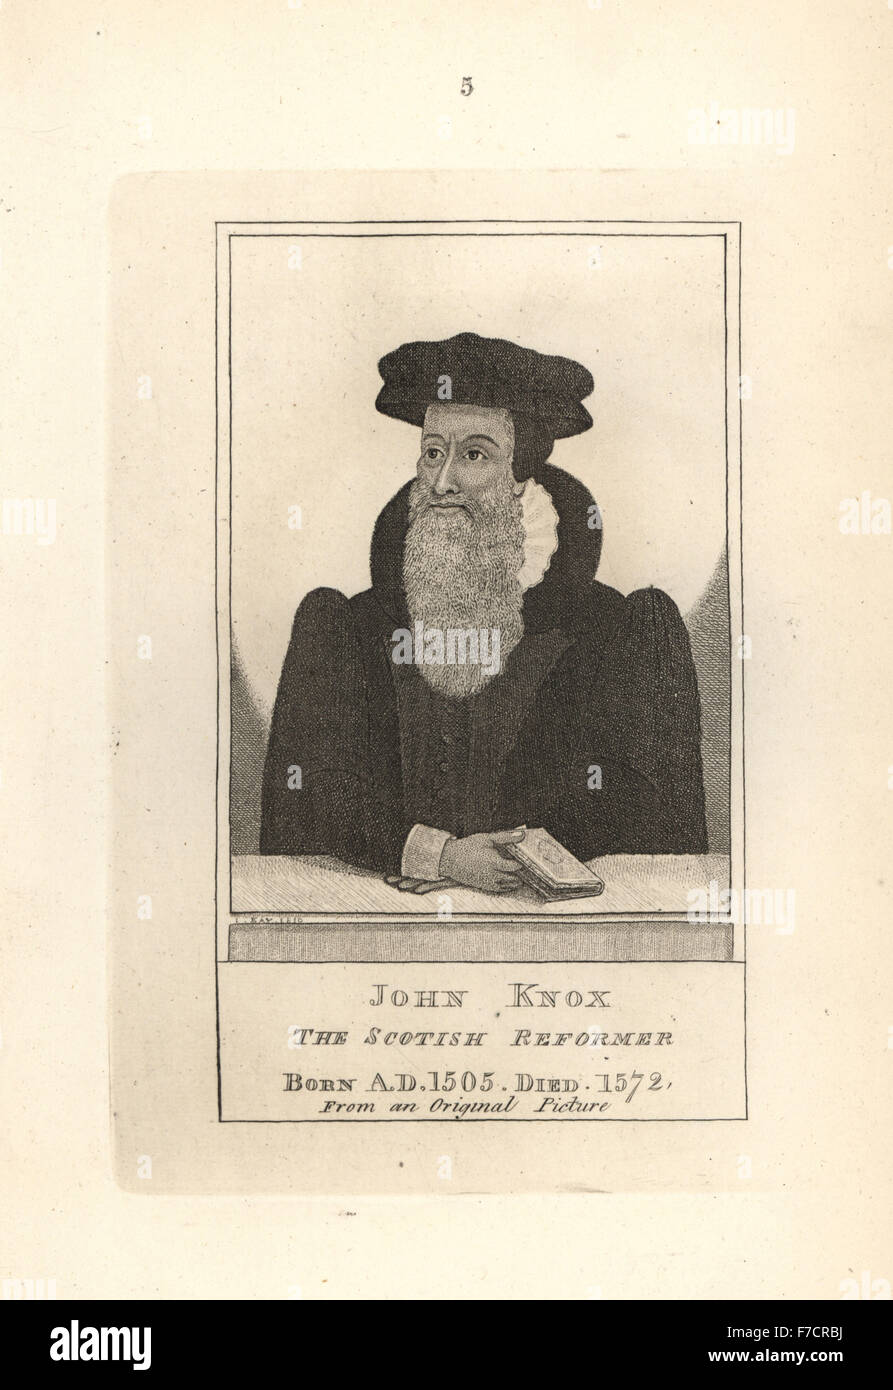 John Knox, el reformador escocés, desde una pintura original. Copperplate grabado por John Kay original a partir de una serie de retratos y caricaturas aguafuertes, Hugh Paton, Edimburgo, 1842. Foto de stock